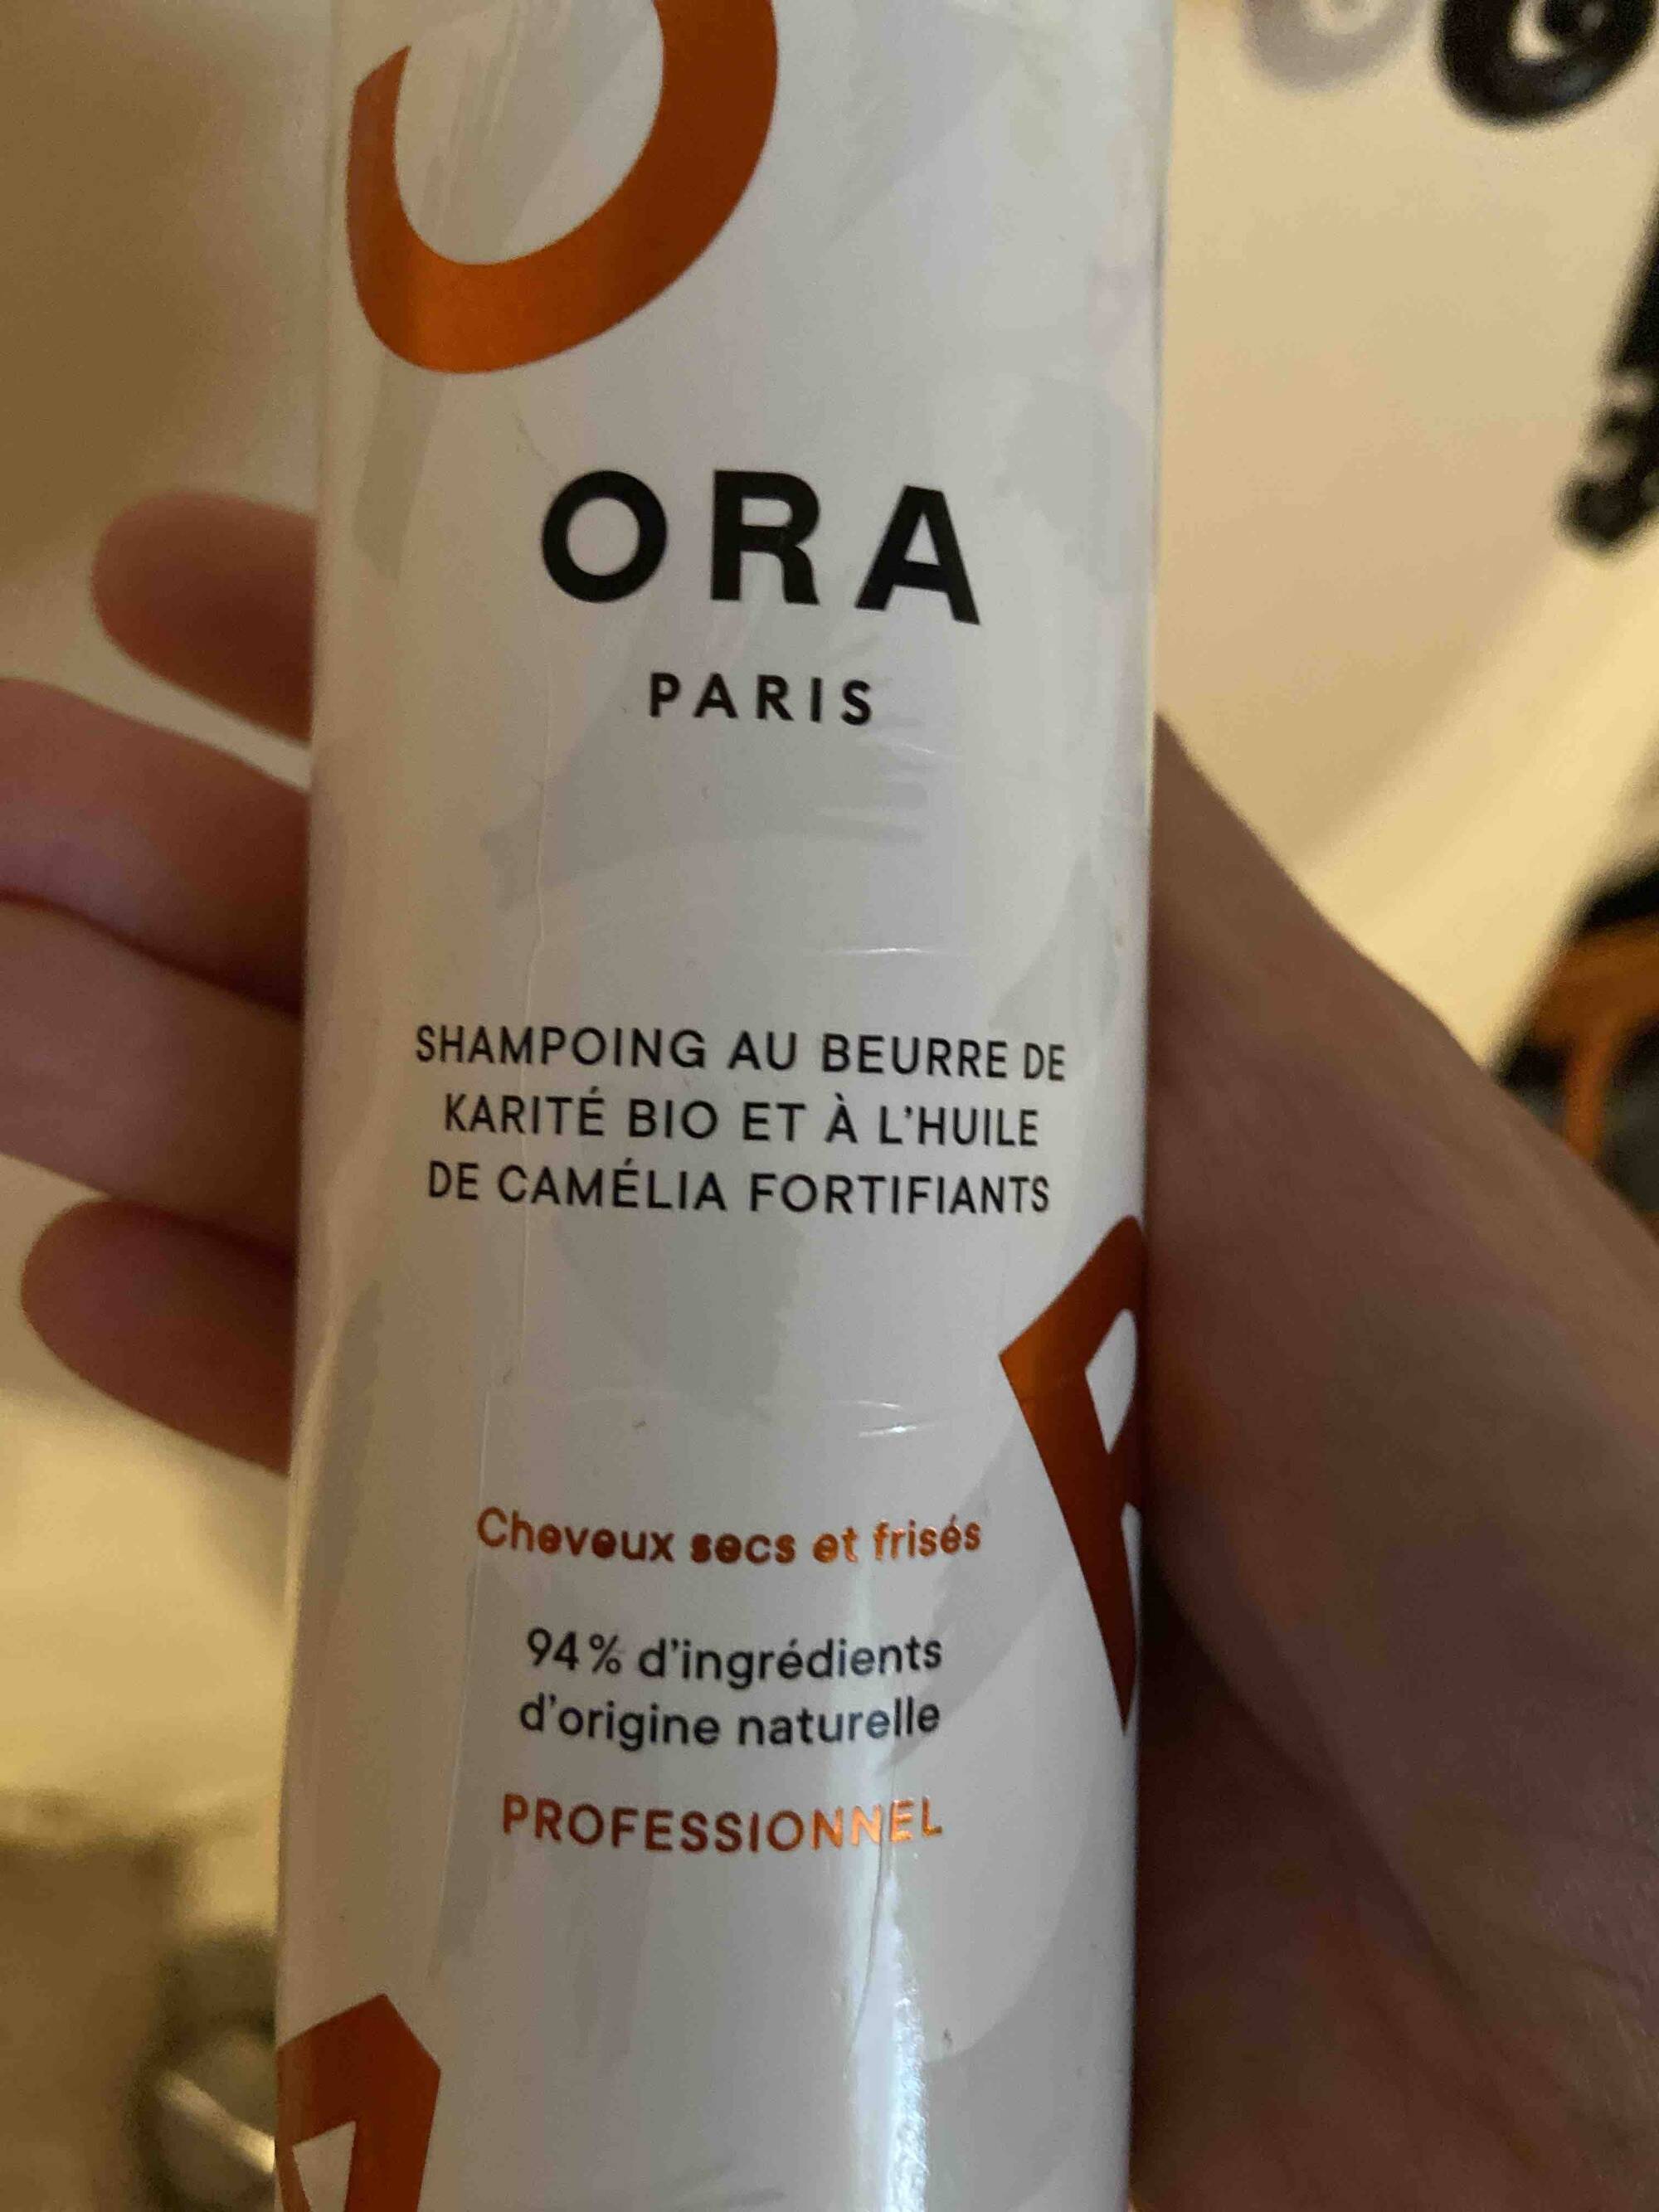 ORA PARIS - Shampoing au Beurre de karité bio et à l'huile de Camélia fortifiants